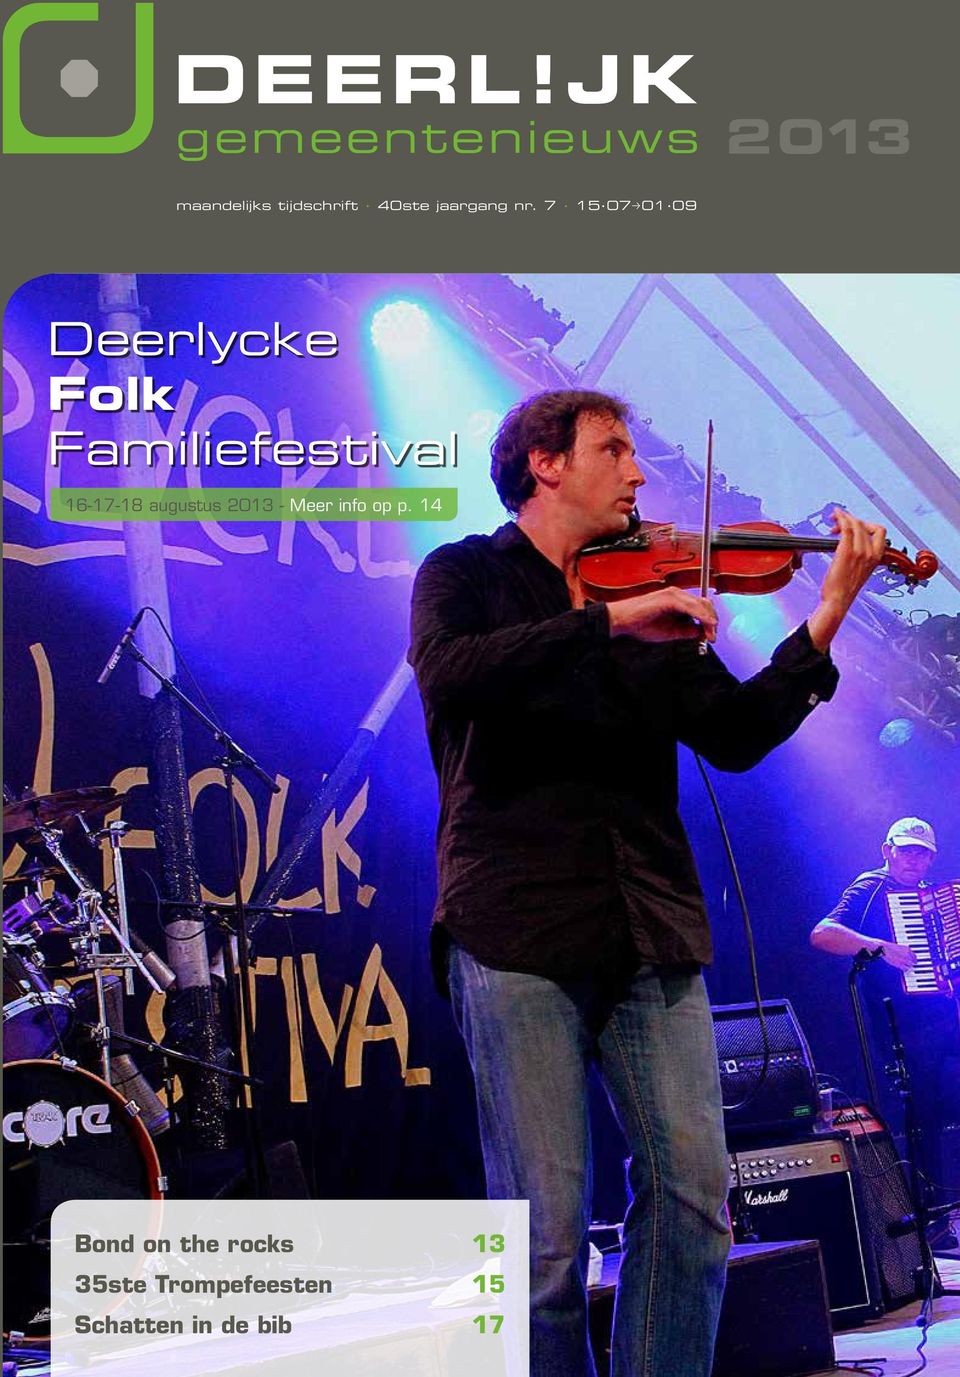 7 15 07p01 09 Deerlycke Folk Familiefestival 16-17-18